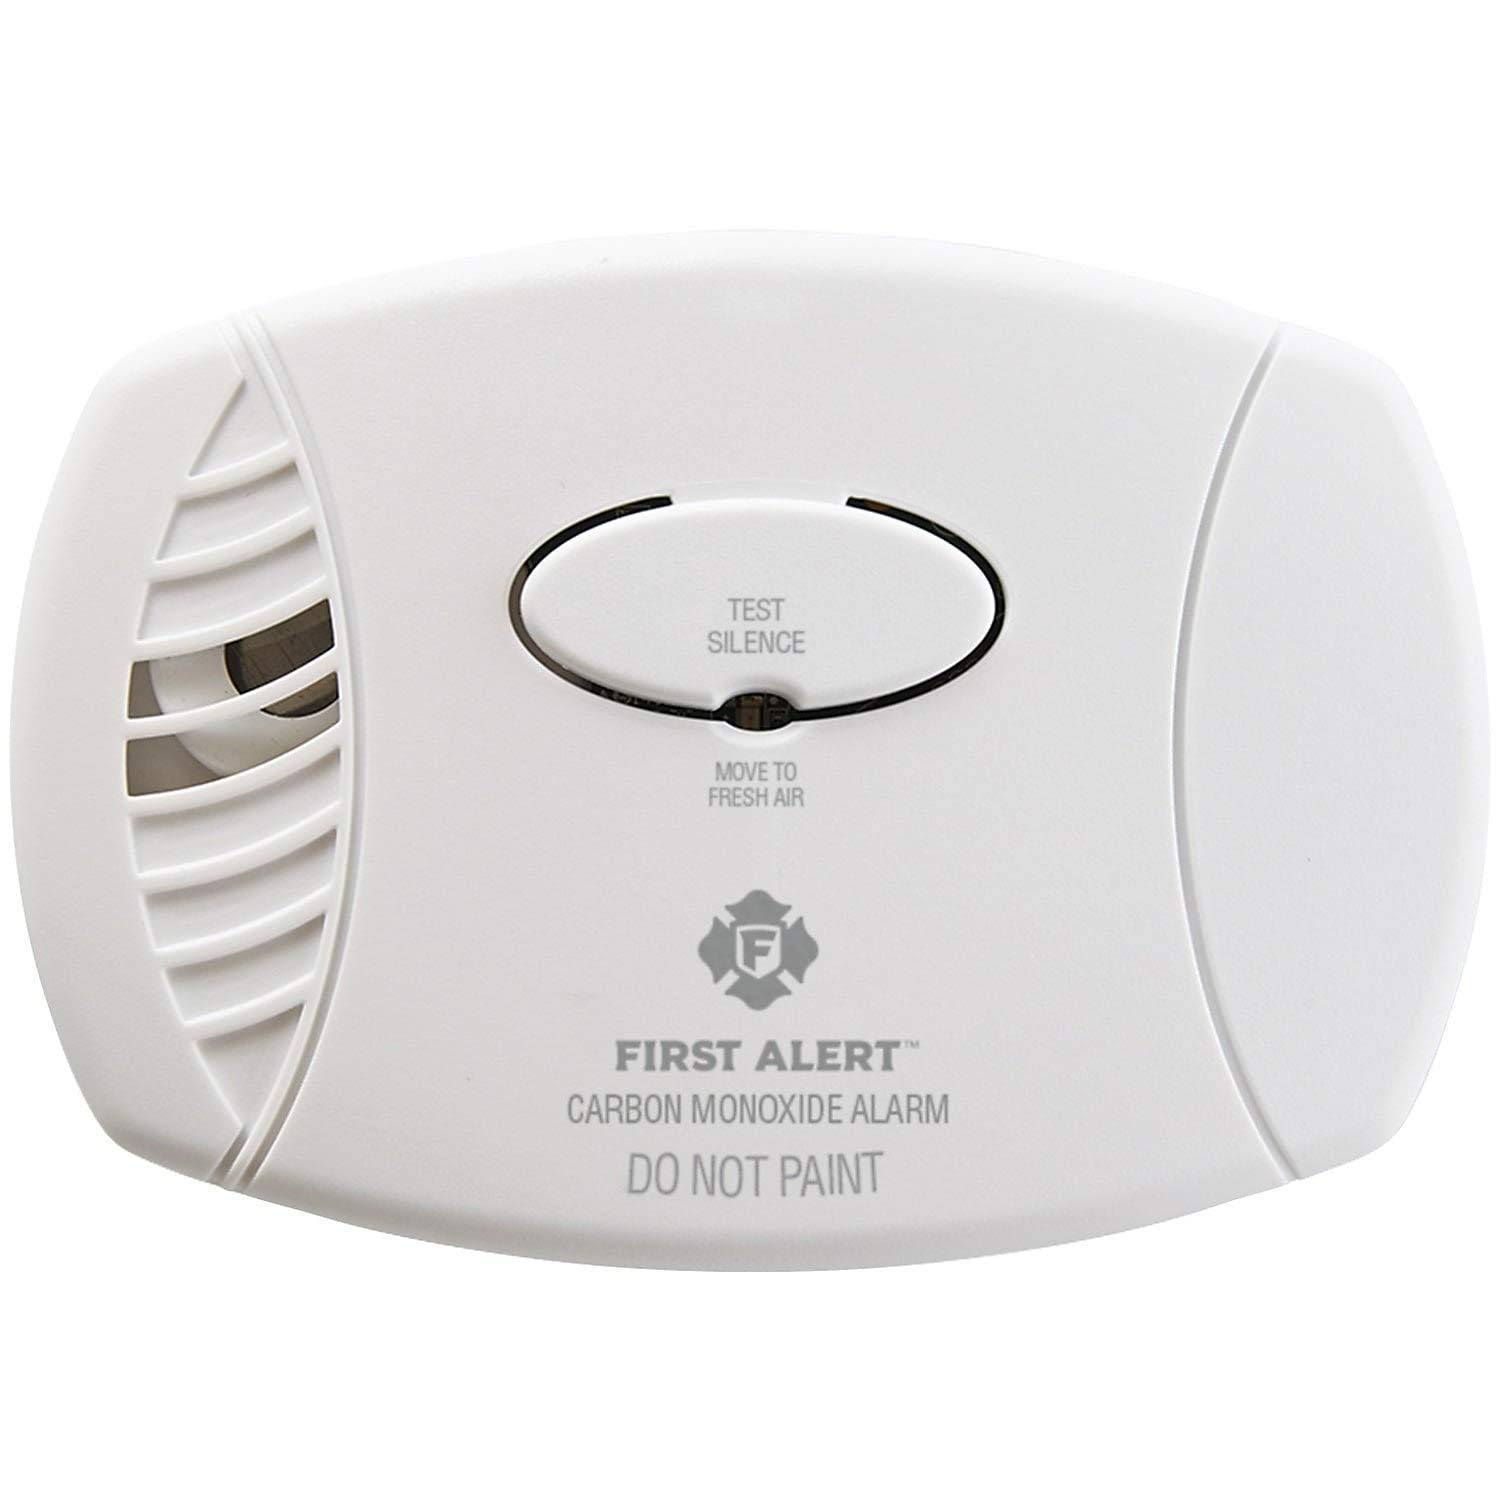 First Alert CO400 Carbon Monoxide Alarm